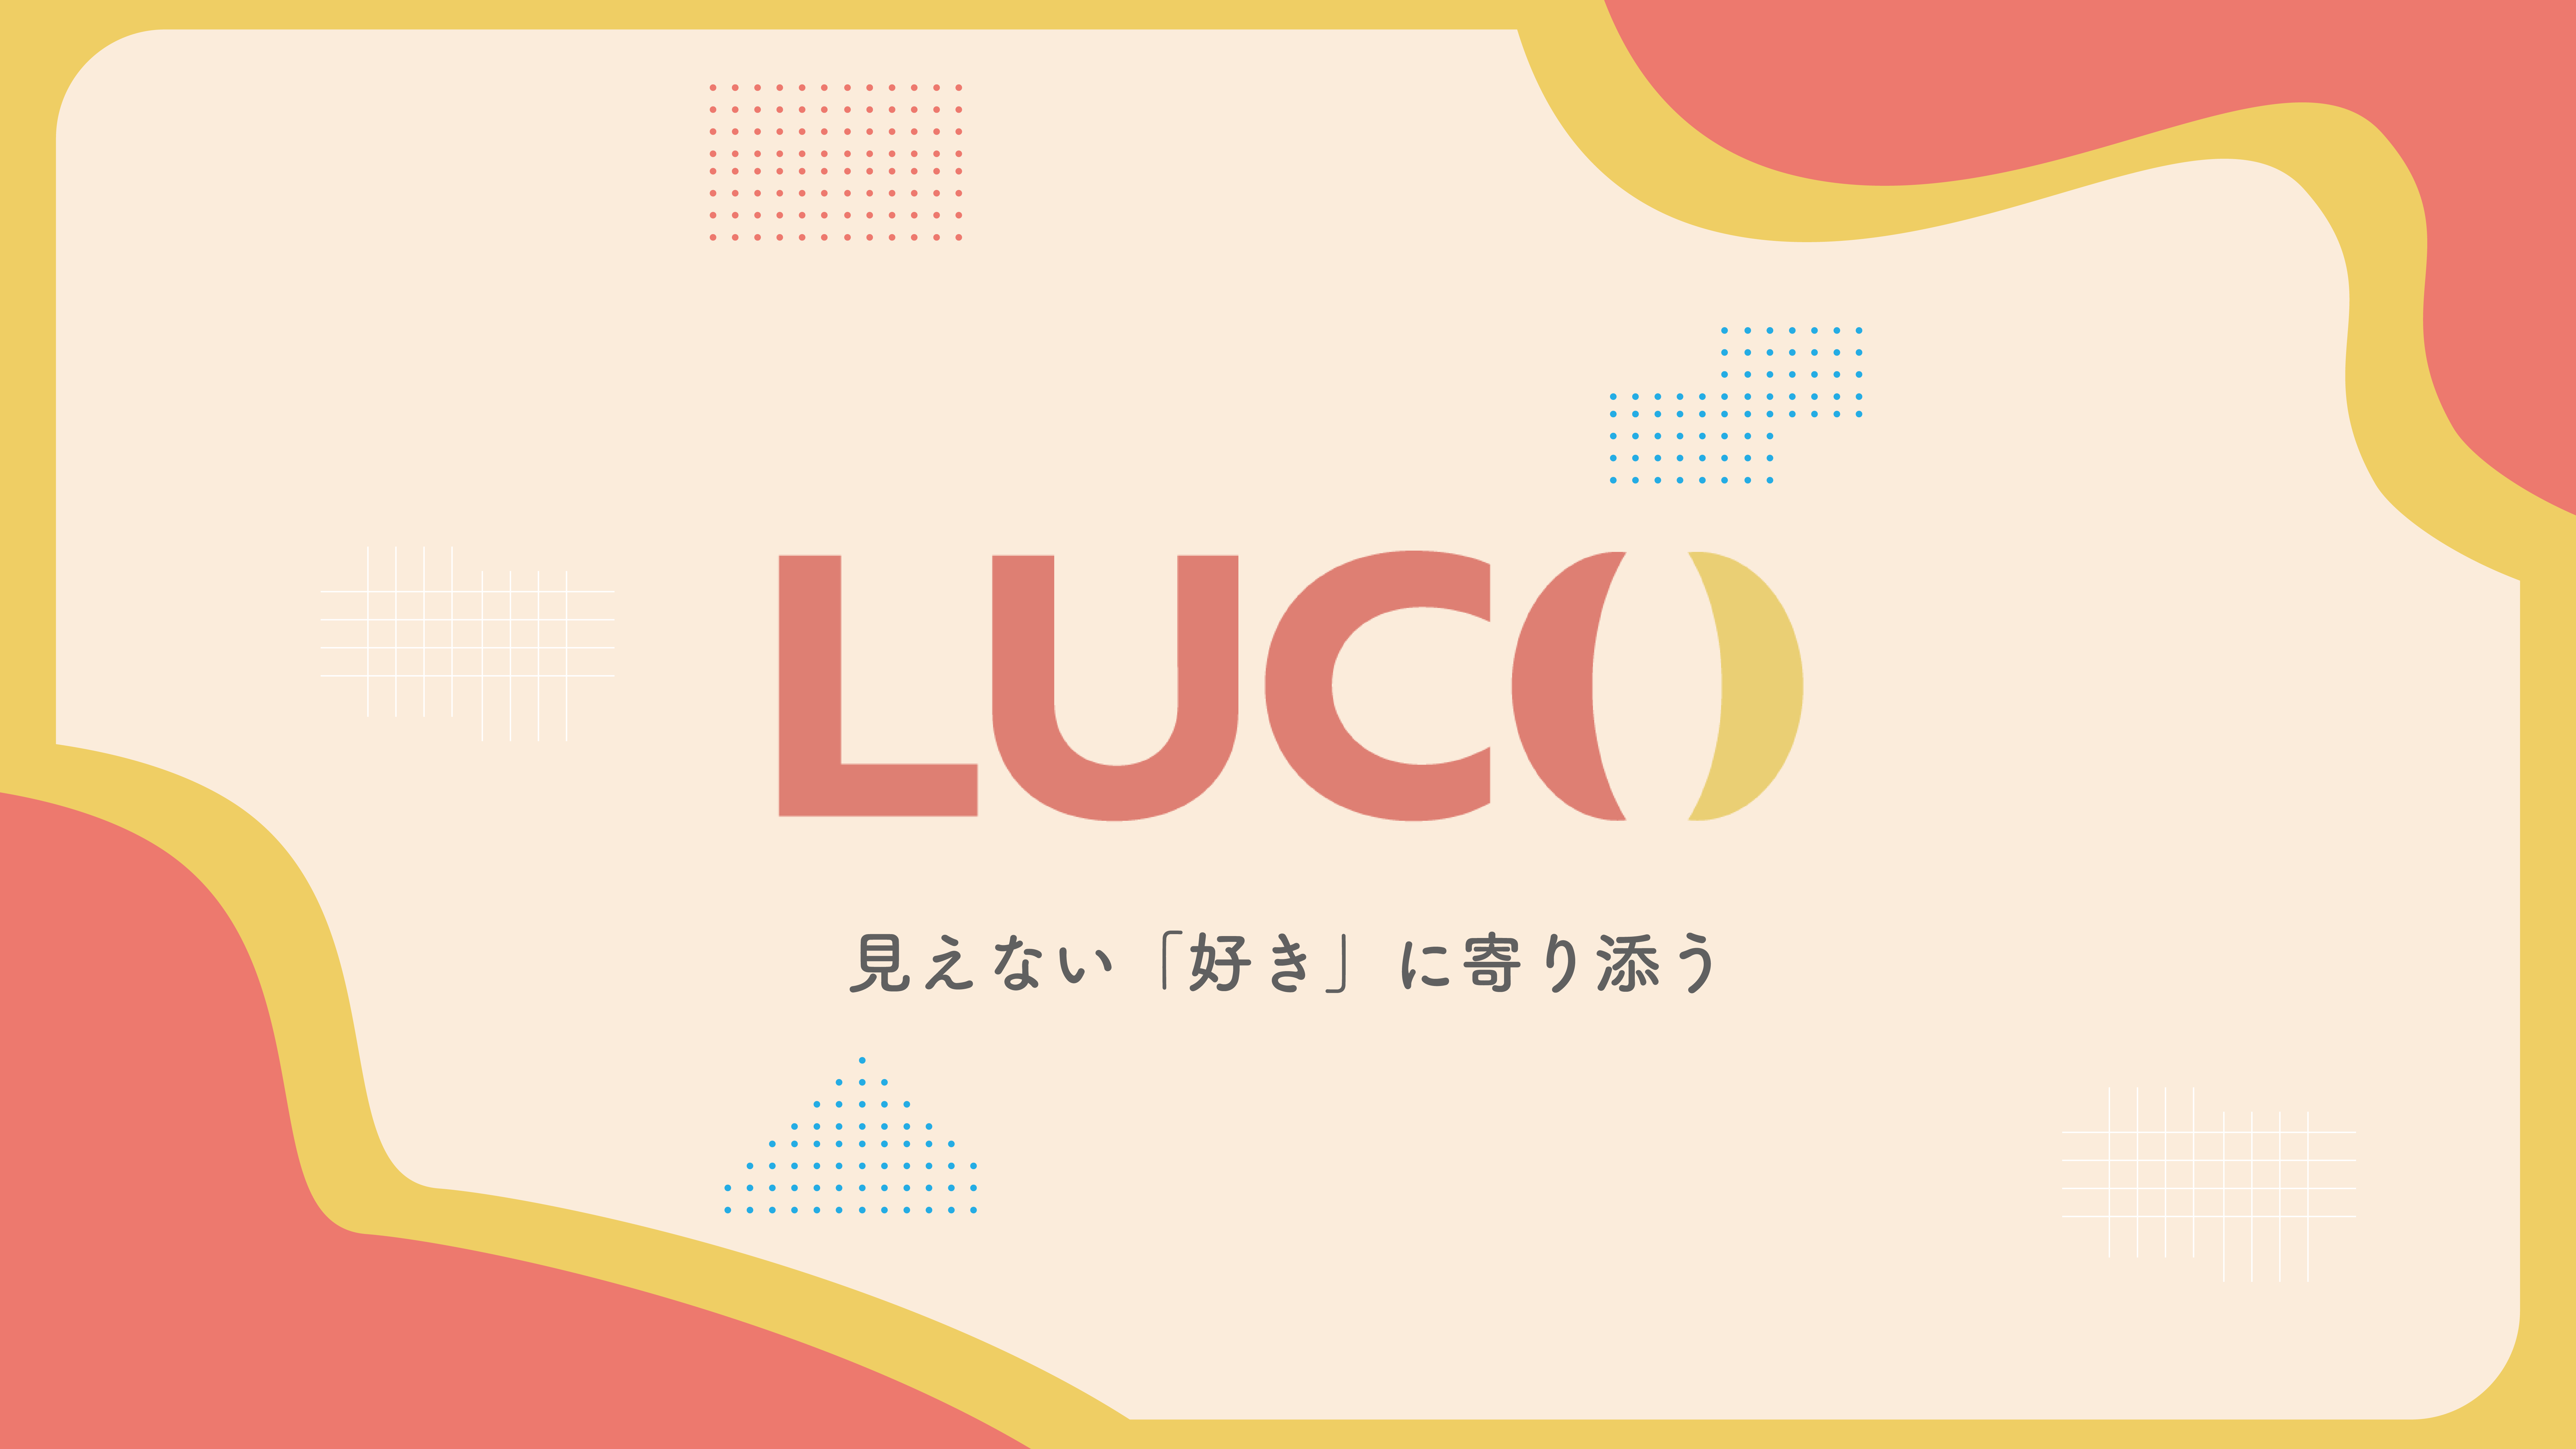 生配信に関連するサービスの開発・提供を行う株式会社luco設立のお知らせ【PRTIMES】